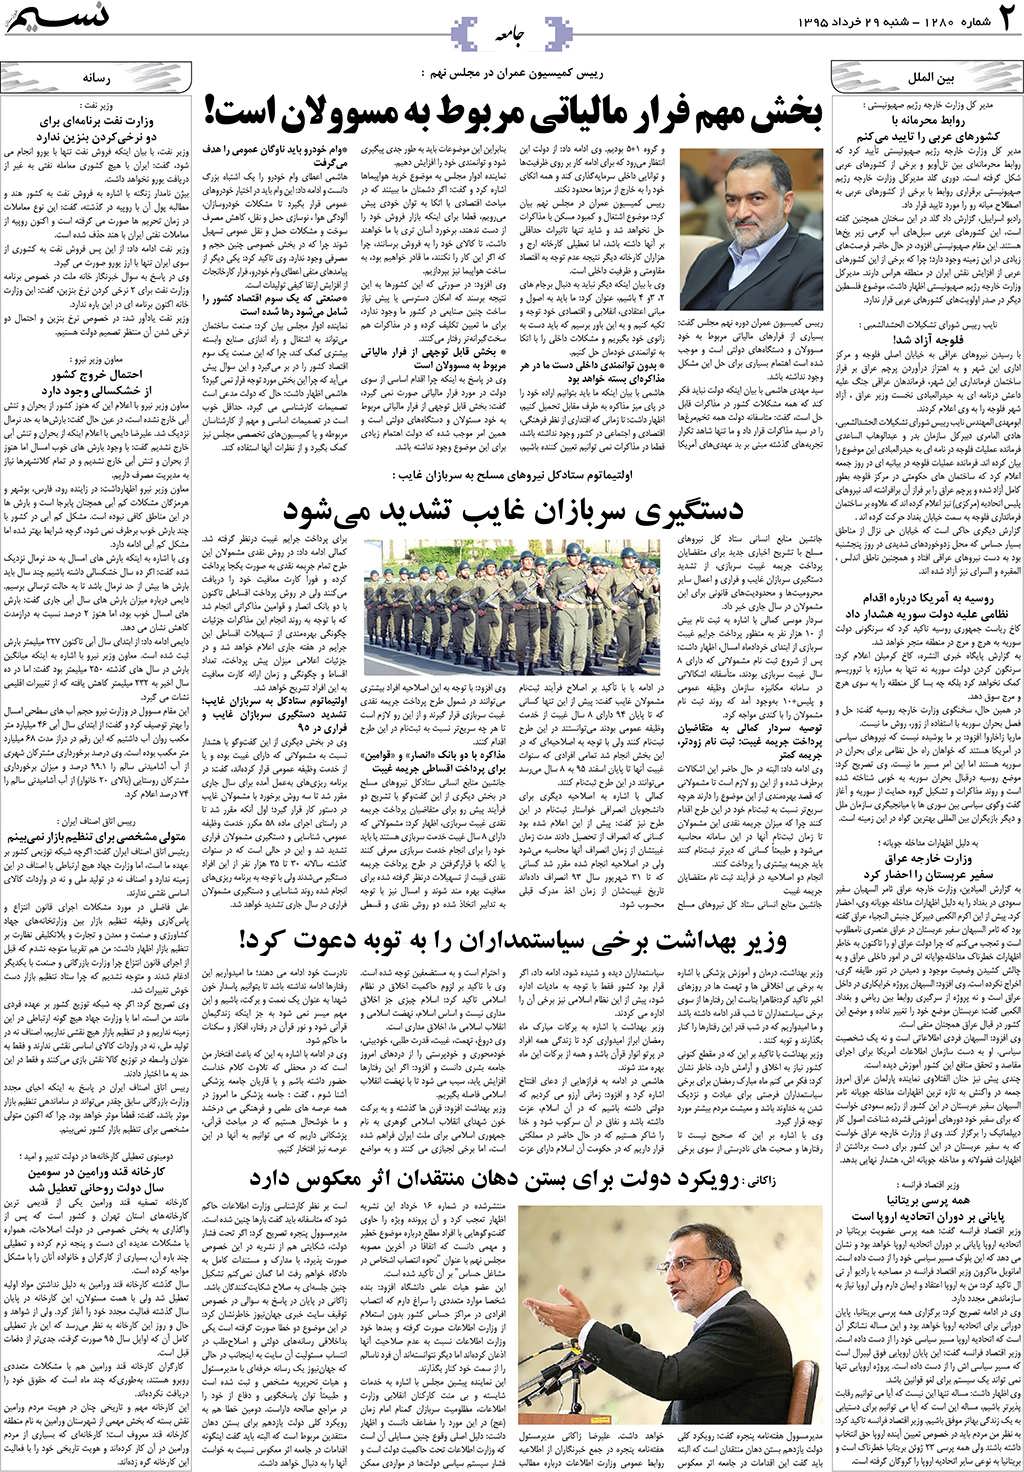 صفحه جامعه روزنامه نسیم شماره 1280